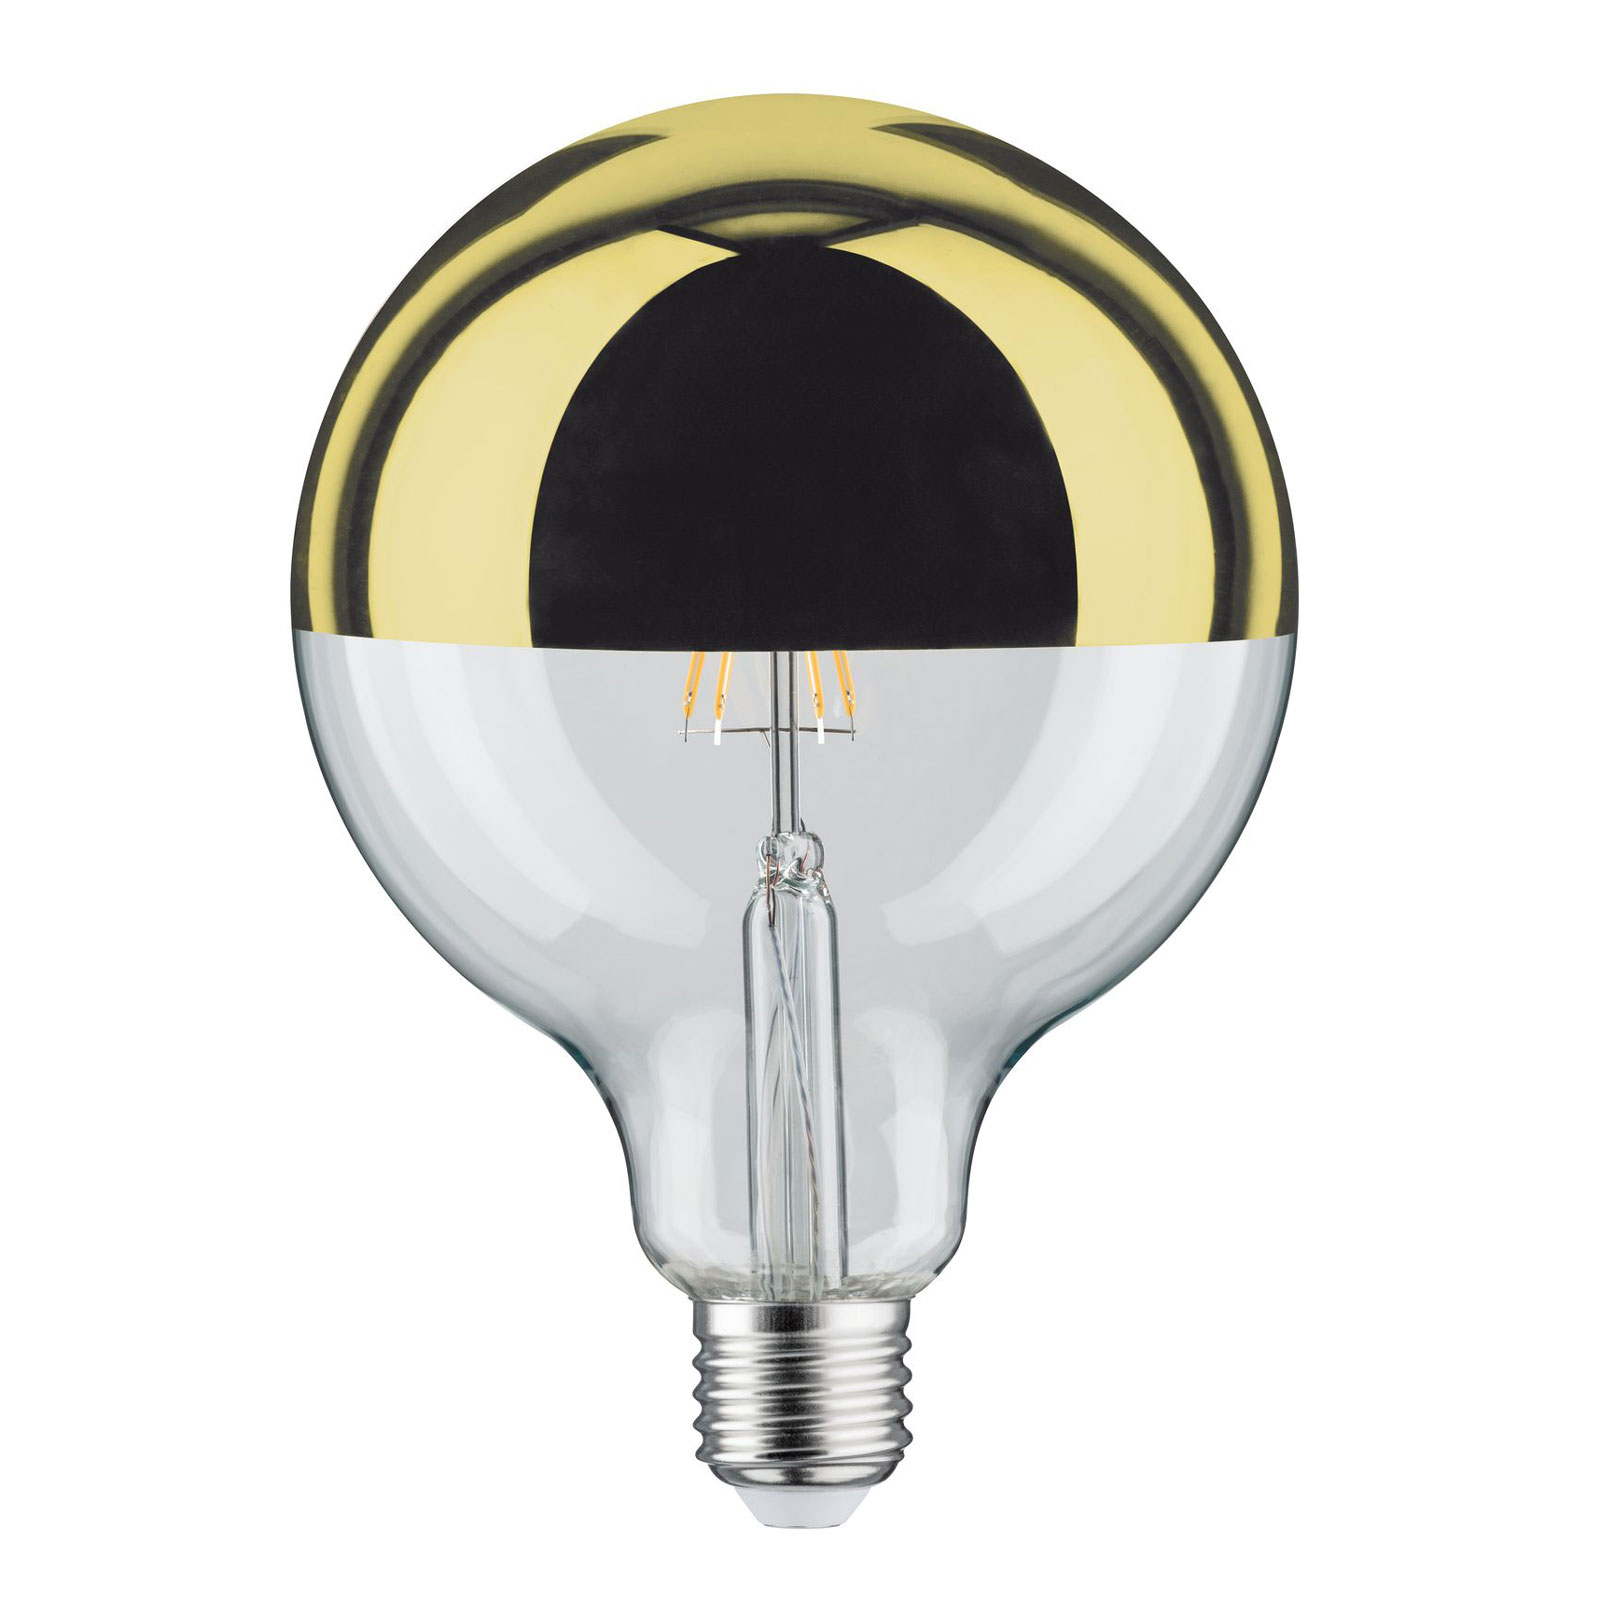 LED-lampa E27 G125 827 6.5W Huvudspegel guld